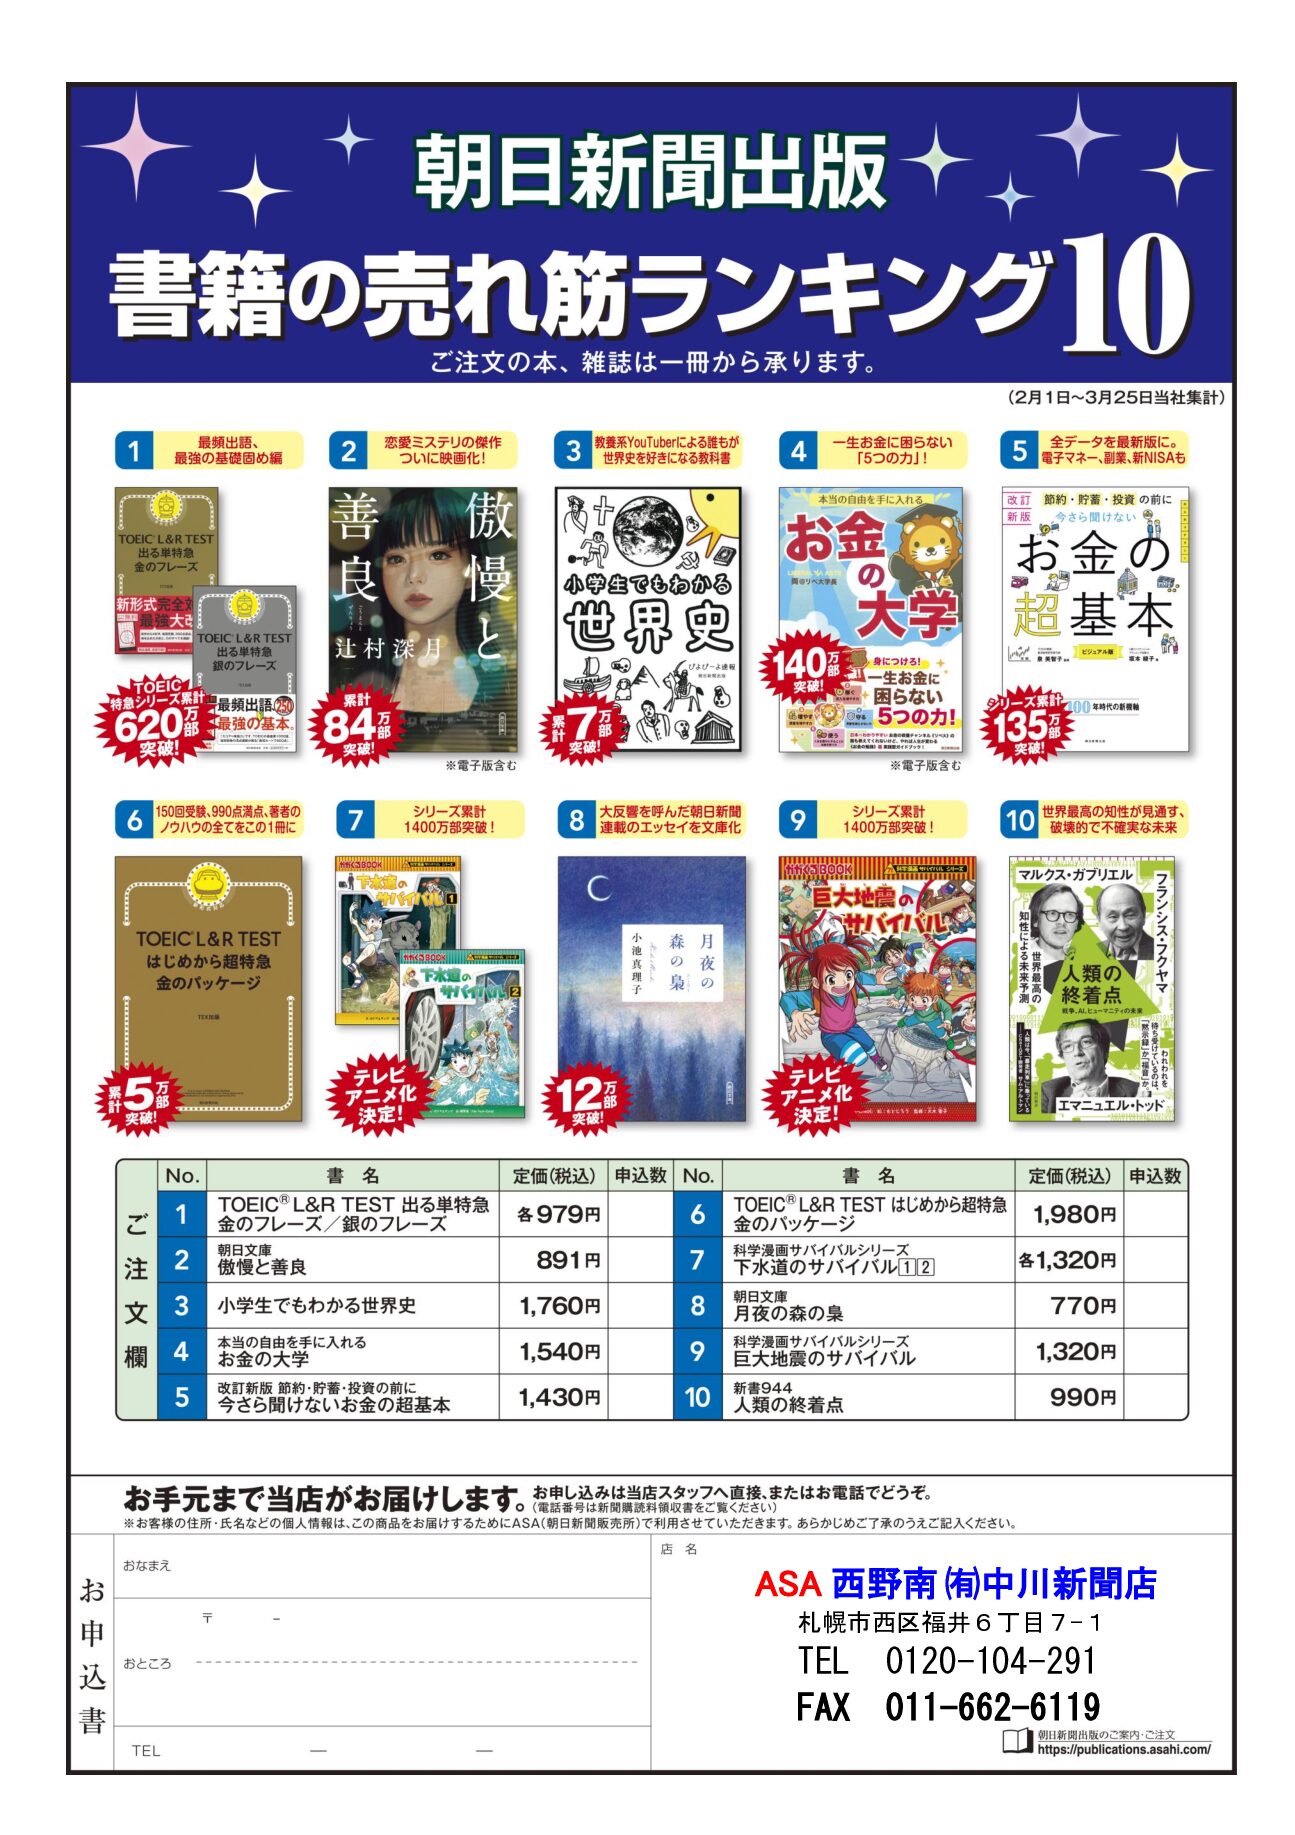 朝日新聞出版 書箱の売れ筋ランキング10 4月image